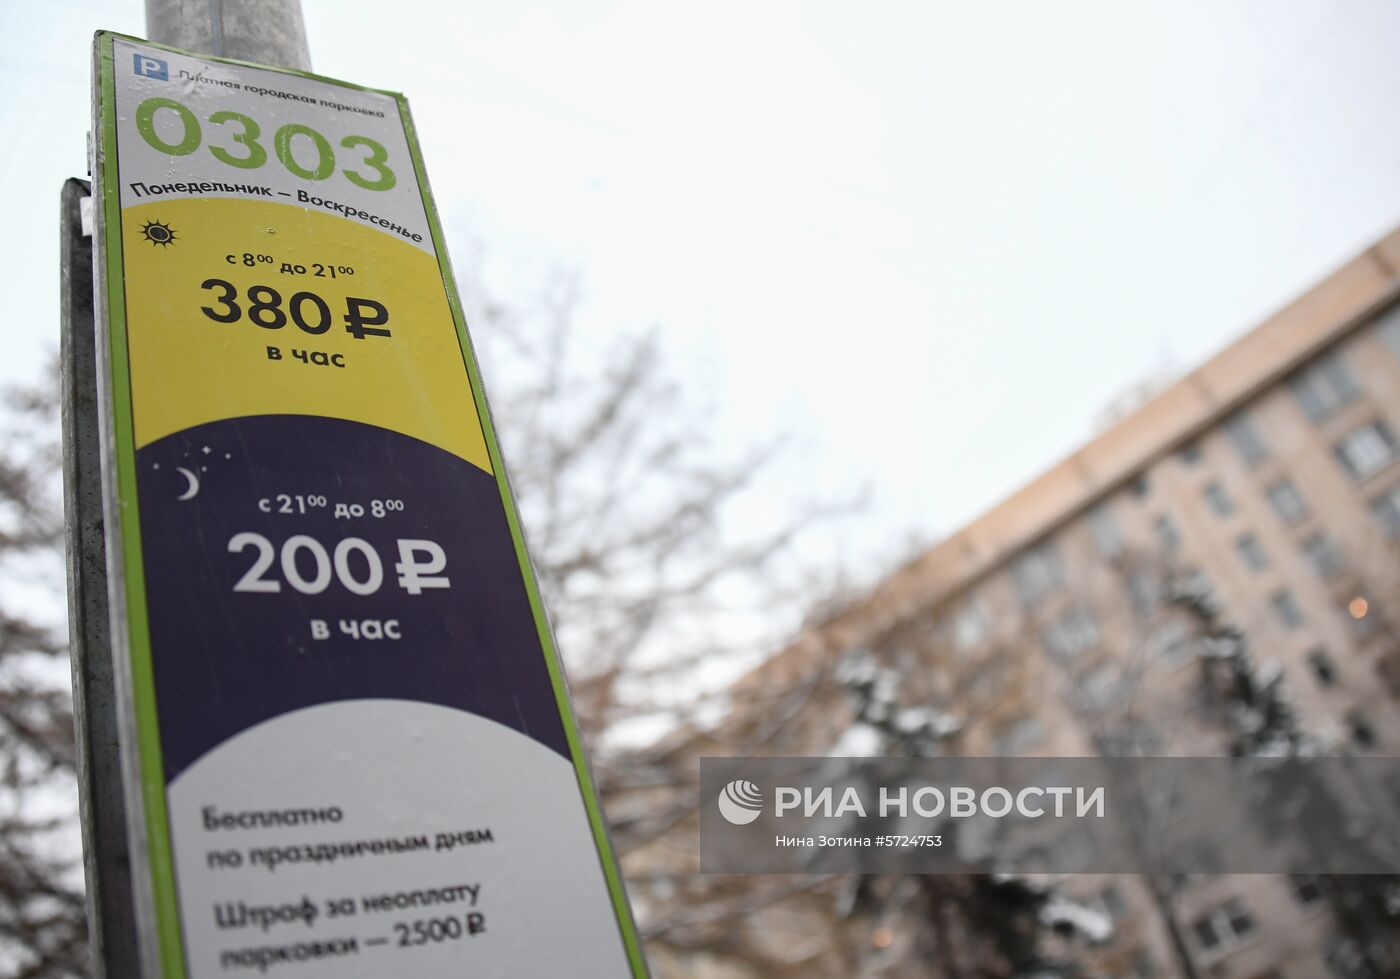 В Москве изменятся правила платной парковки